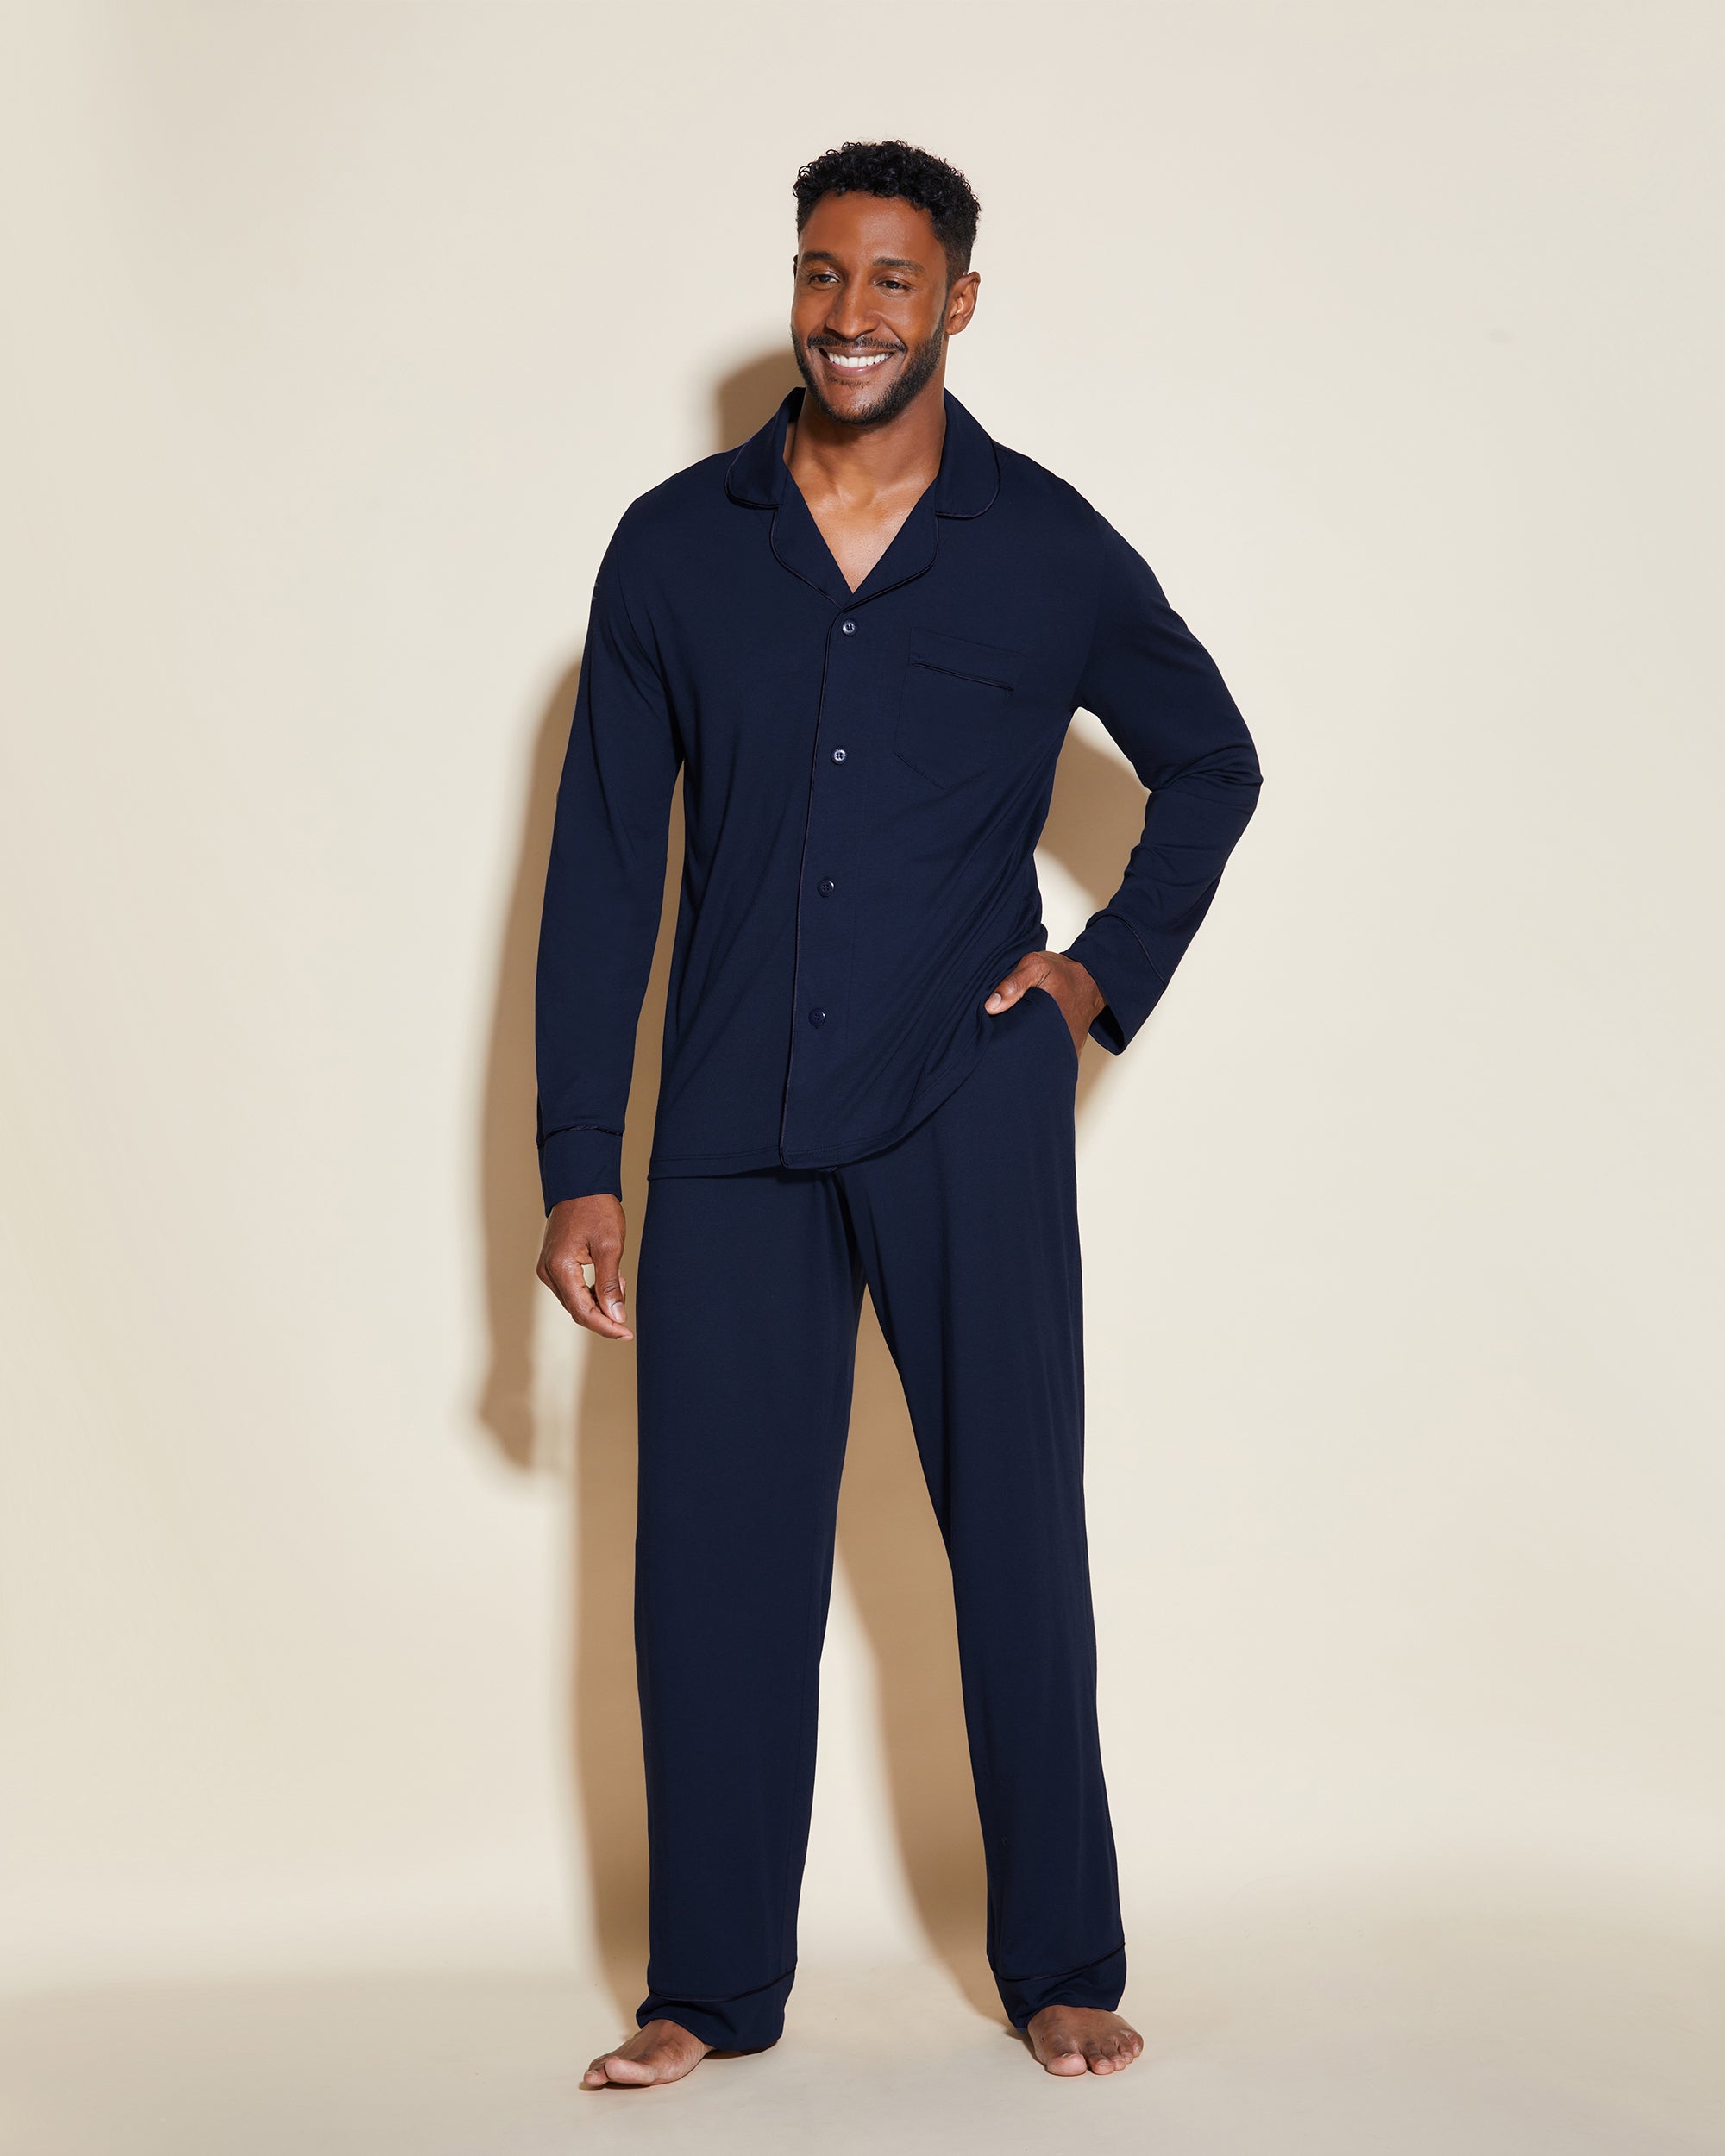 Men's Classic Long Sleeve Top & Pant Pajama Set